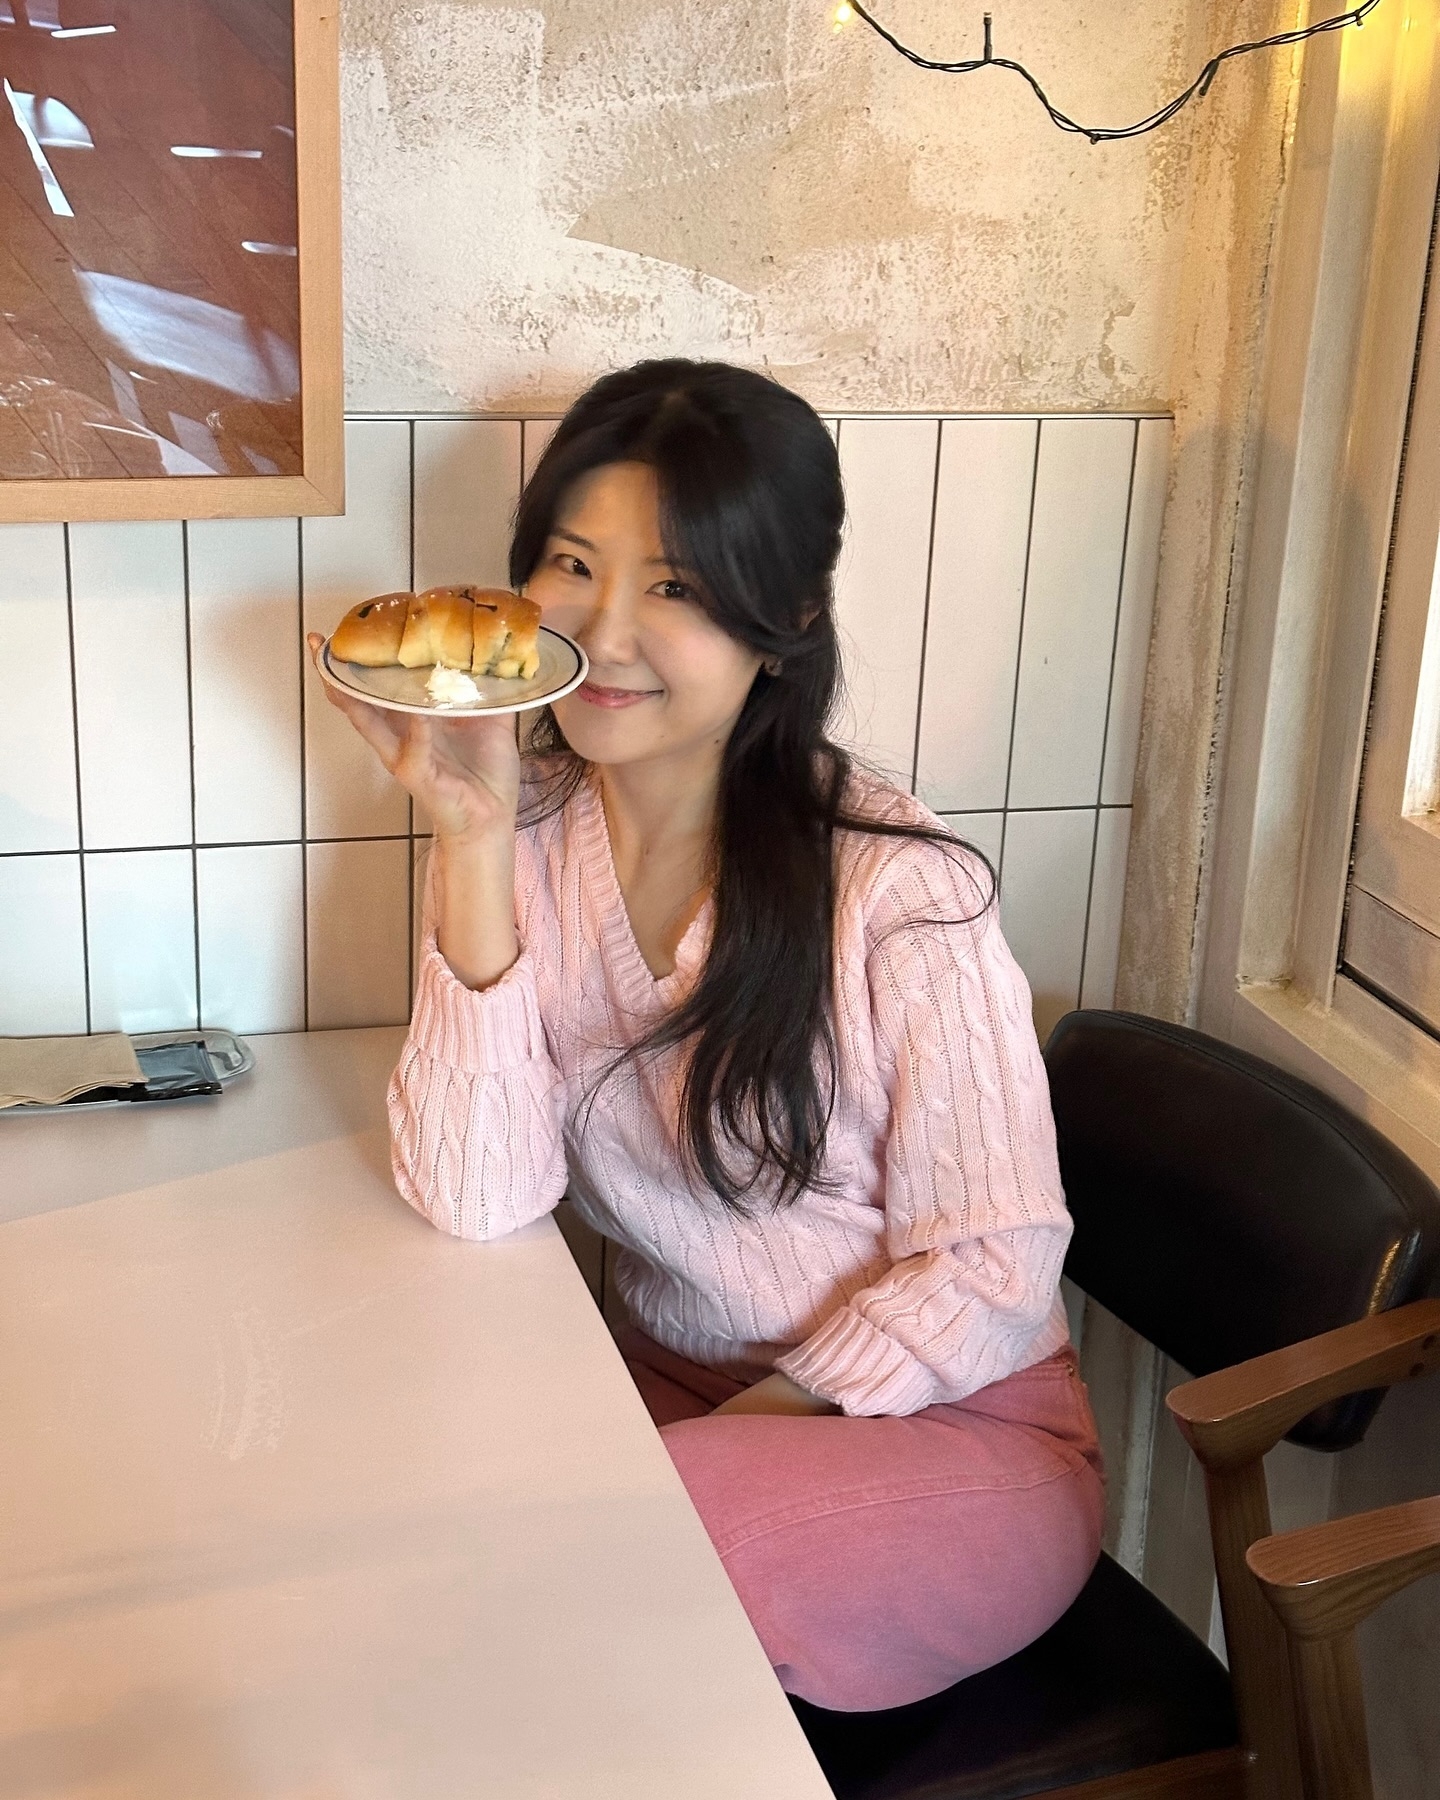 韓國新娘瘦身食譜飽住瘦由79kg勁甩24kg  不做運動仲有食Pizza、蛋餅食！